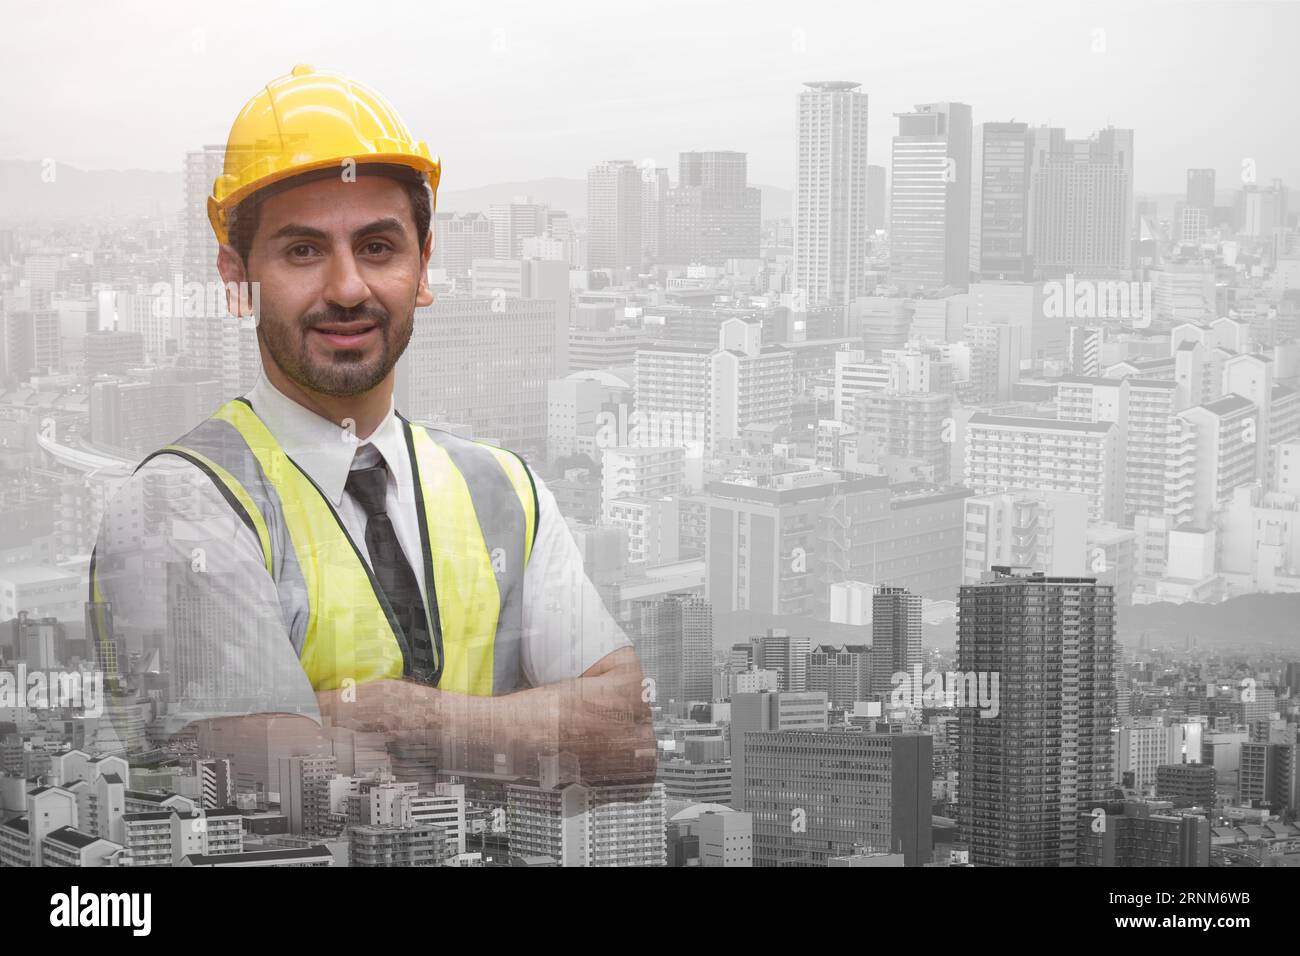 Smart Civil Engineer männlich stehend Cofident lächelnd Doppelbelichtung Overlay moderne Stadt Metro für Stadtbau Engineering Vision Planing Concep Stockfoto